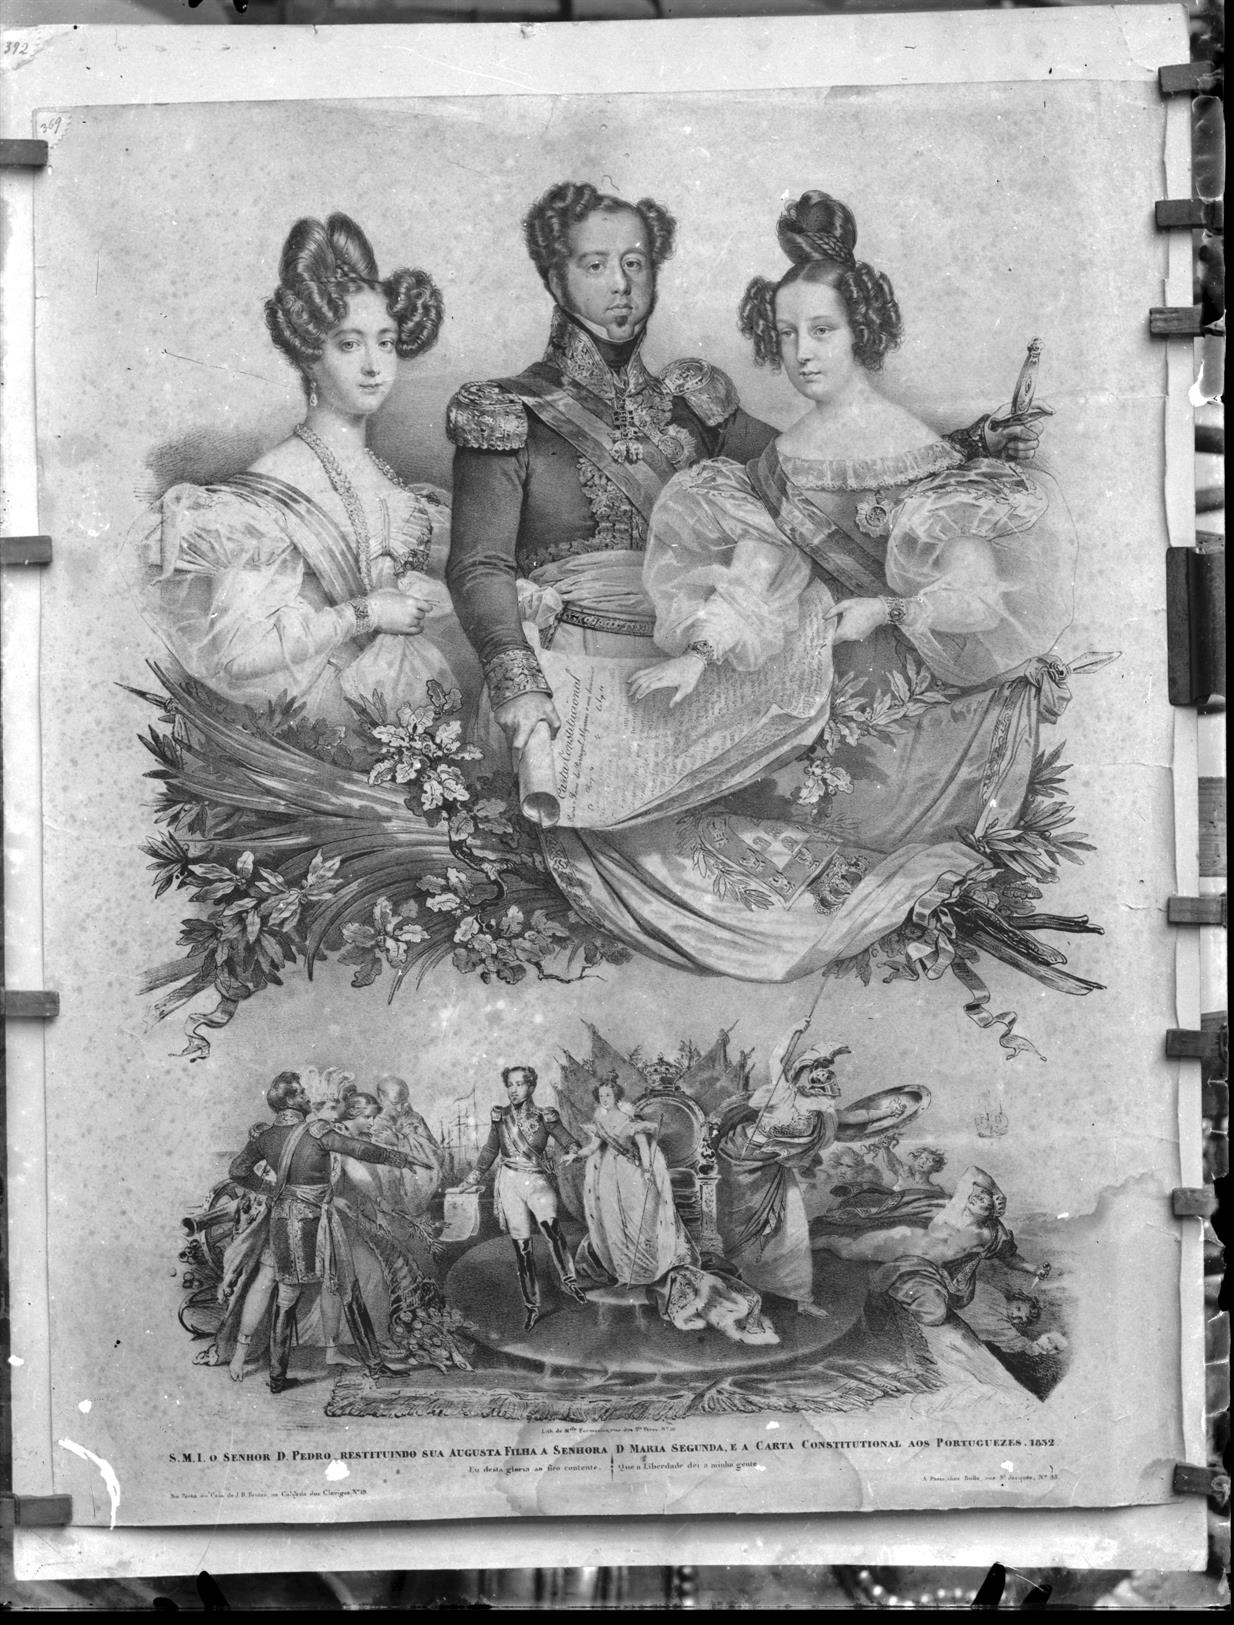 S.M.I. O Senhor D. Pedro, restituindo sua augusta filha a senhora D. Maria II, e a carta constitucional aos portugueses : 1832